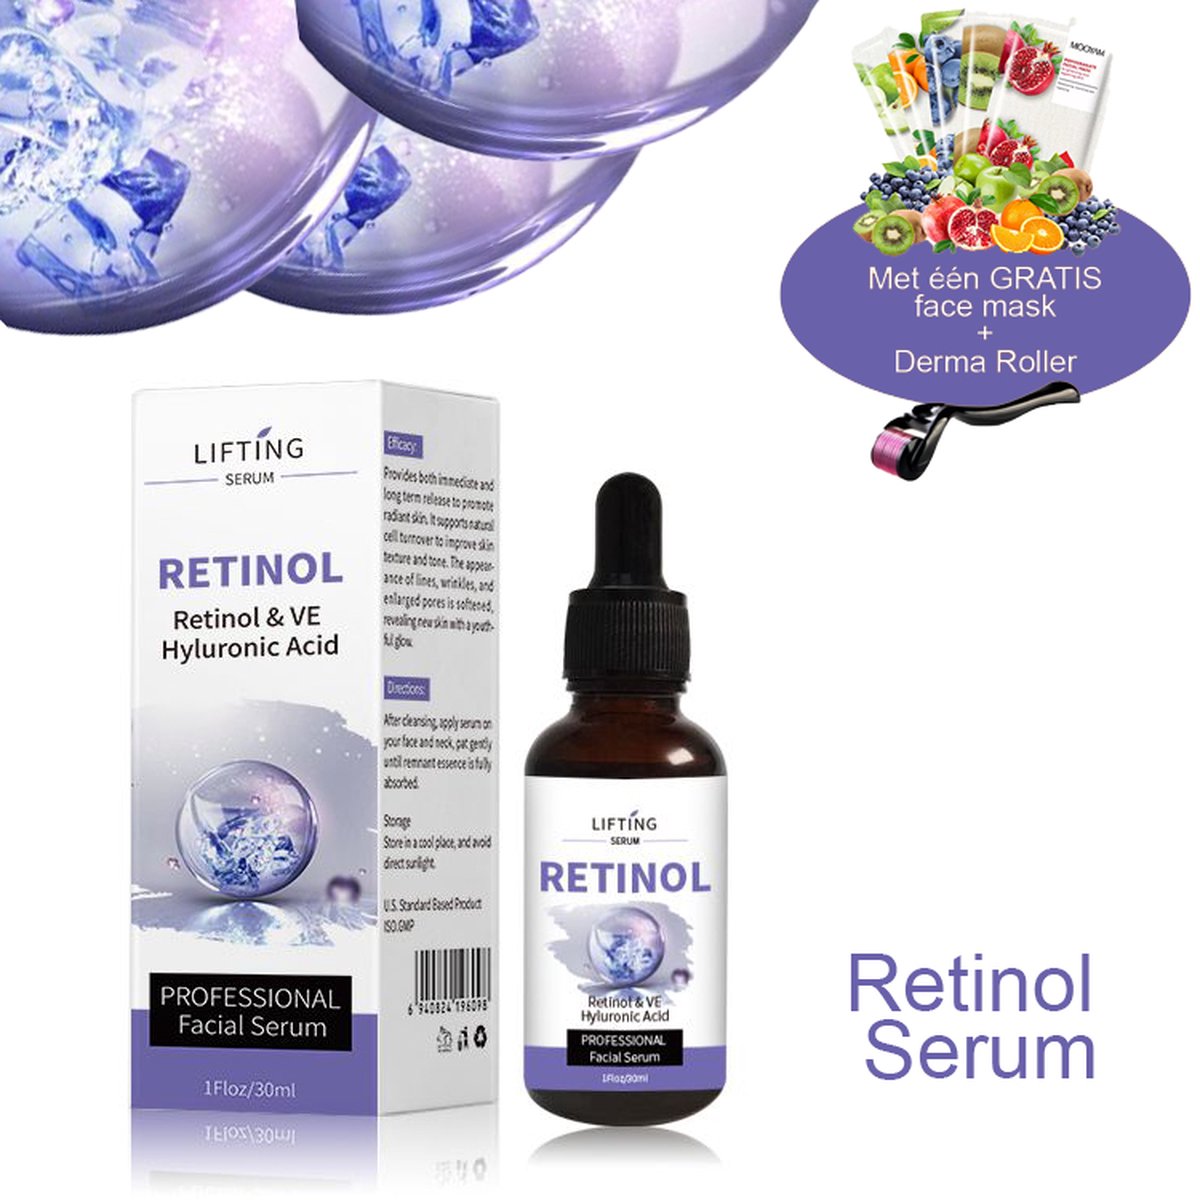 MÔOYAM Active Retinol Serum - Inclusief Dermaroller - Vitamine E & Hyaluronzuur - Gezichtsserum - Anti Aging - Celvernieuwing - Anti-Acne - Tegen Mee-eters en Grove Poriën - Tegen Pigmentvlekken - 30ML